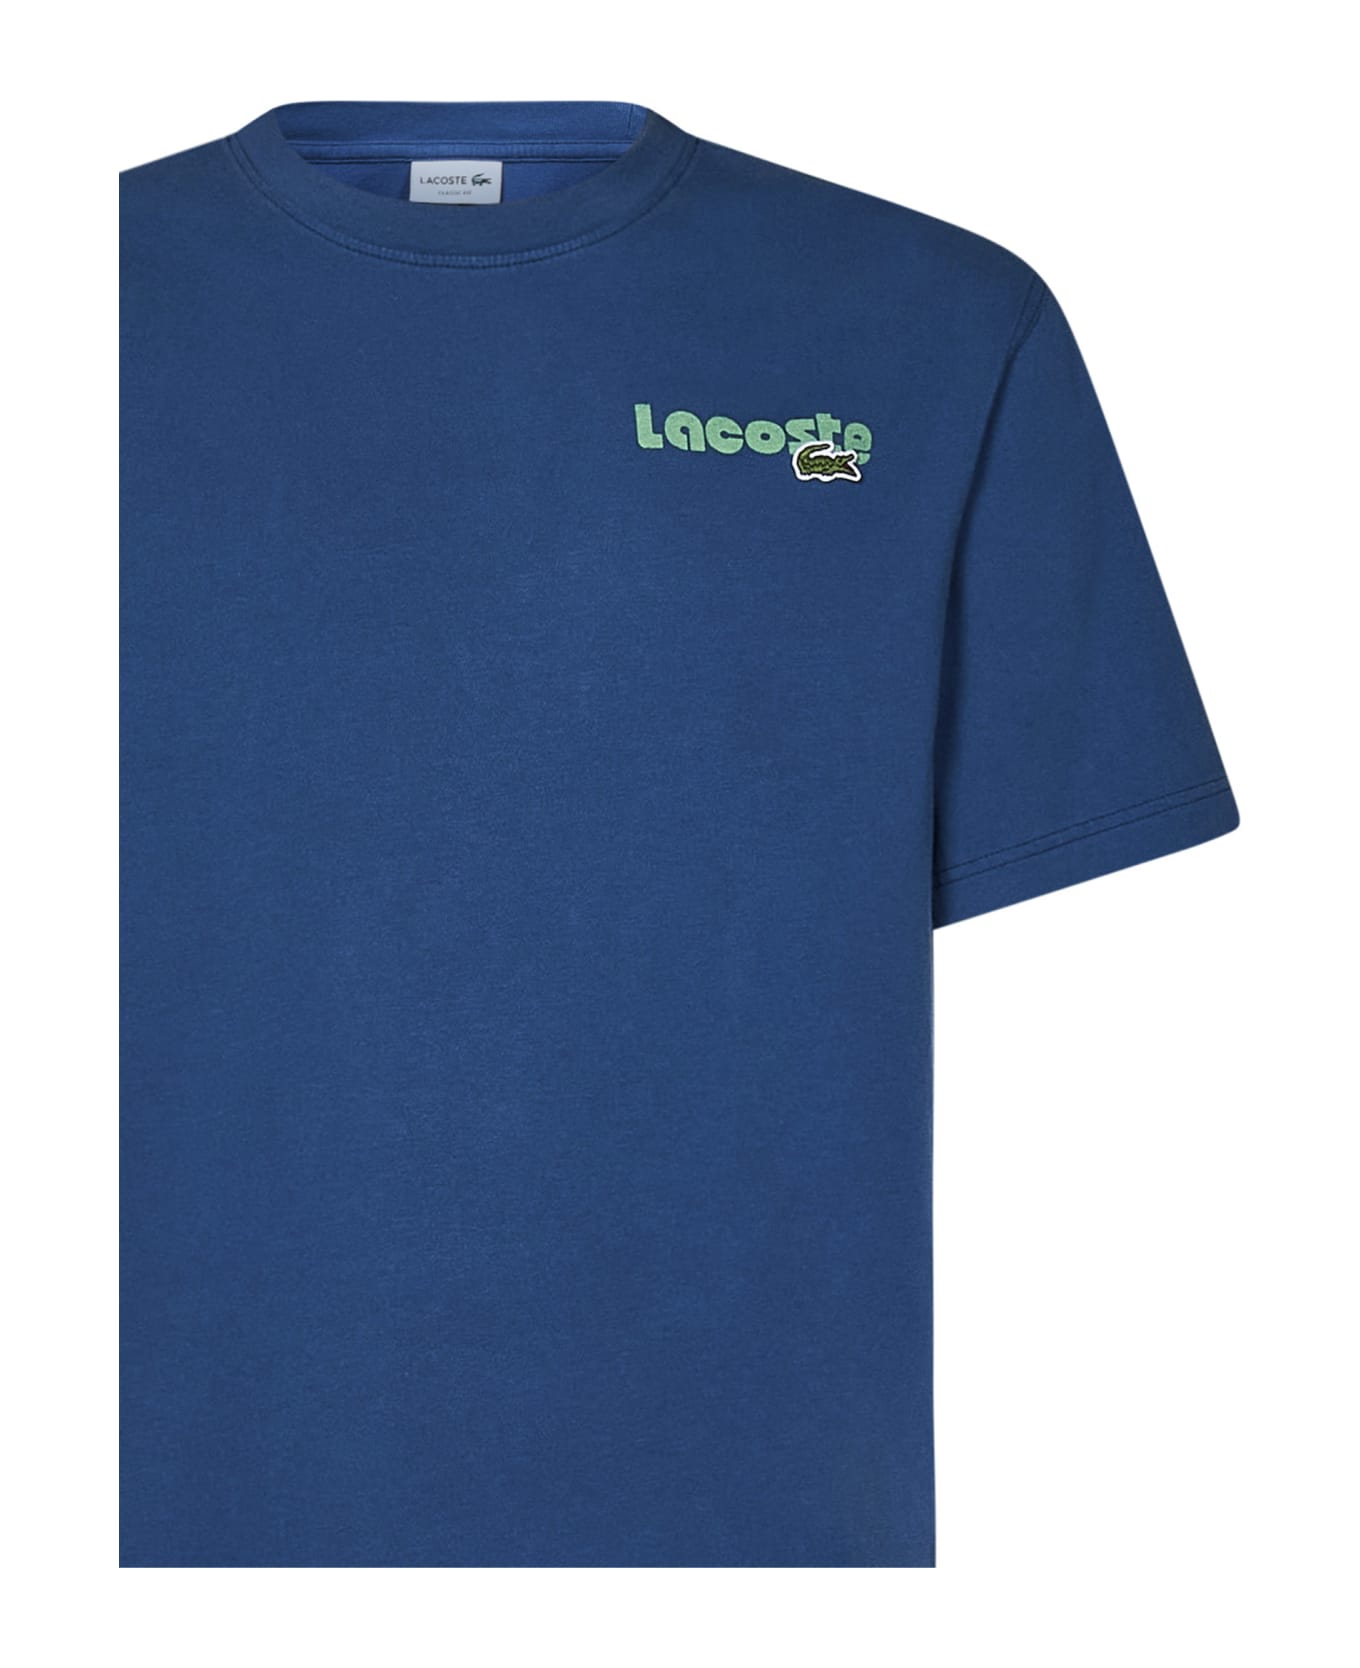 Lacoste T-shirt - Blue シャツ